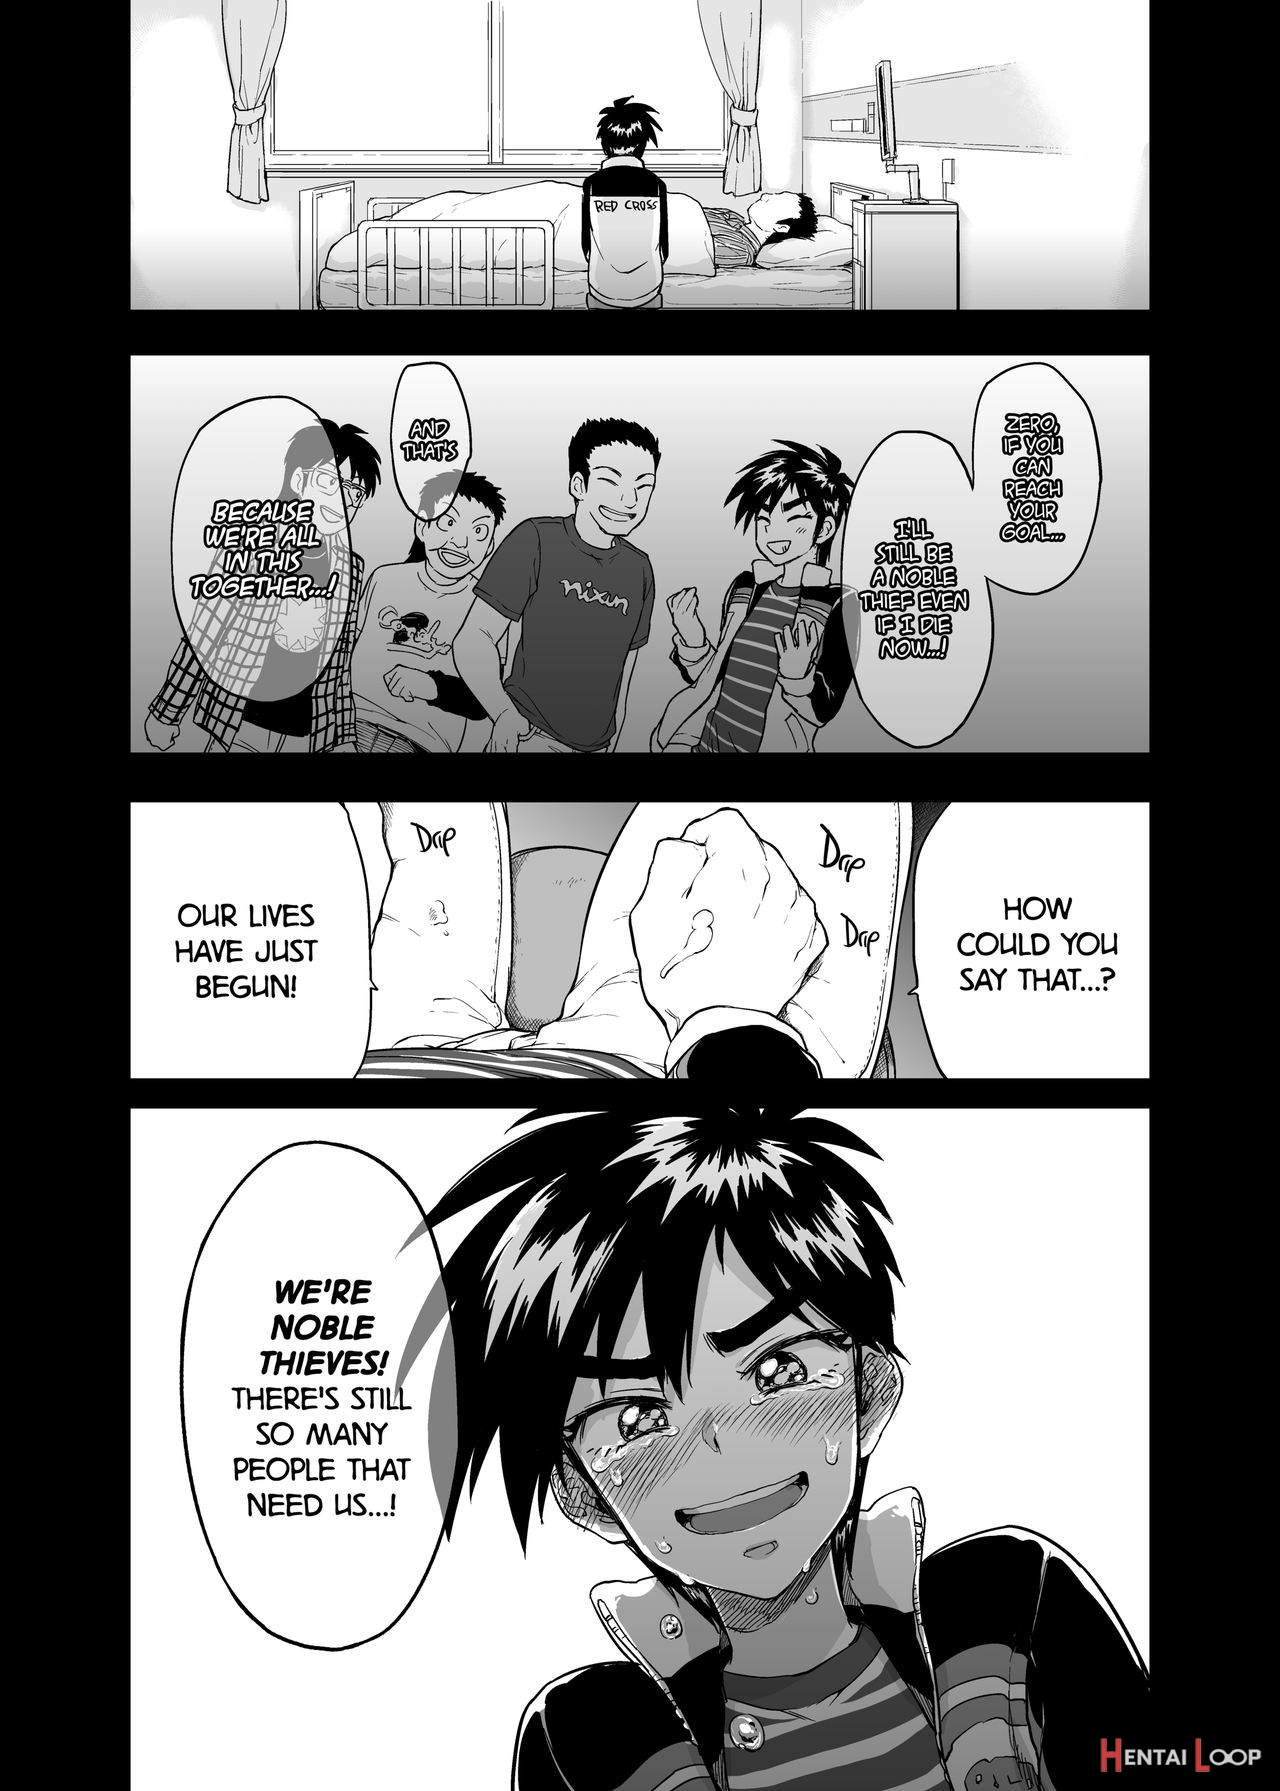 Timezero-kun's Secret First Time page 2